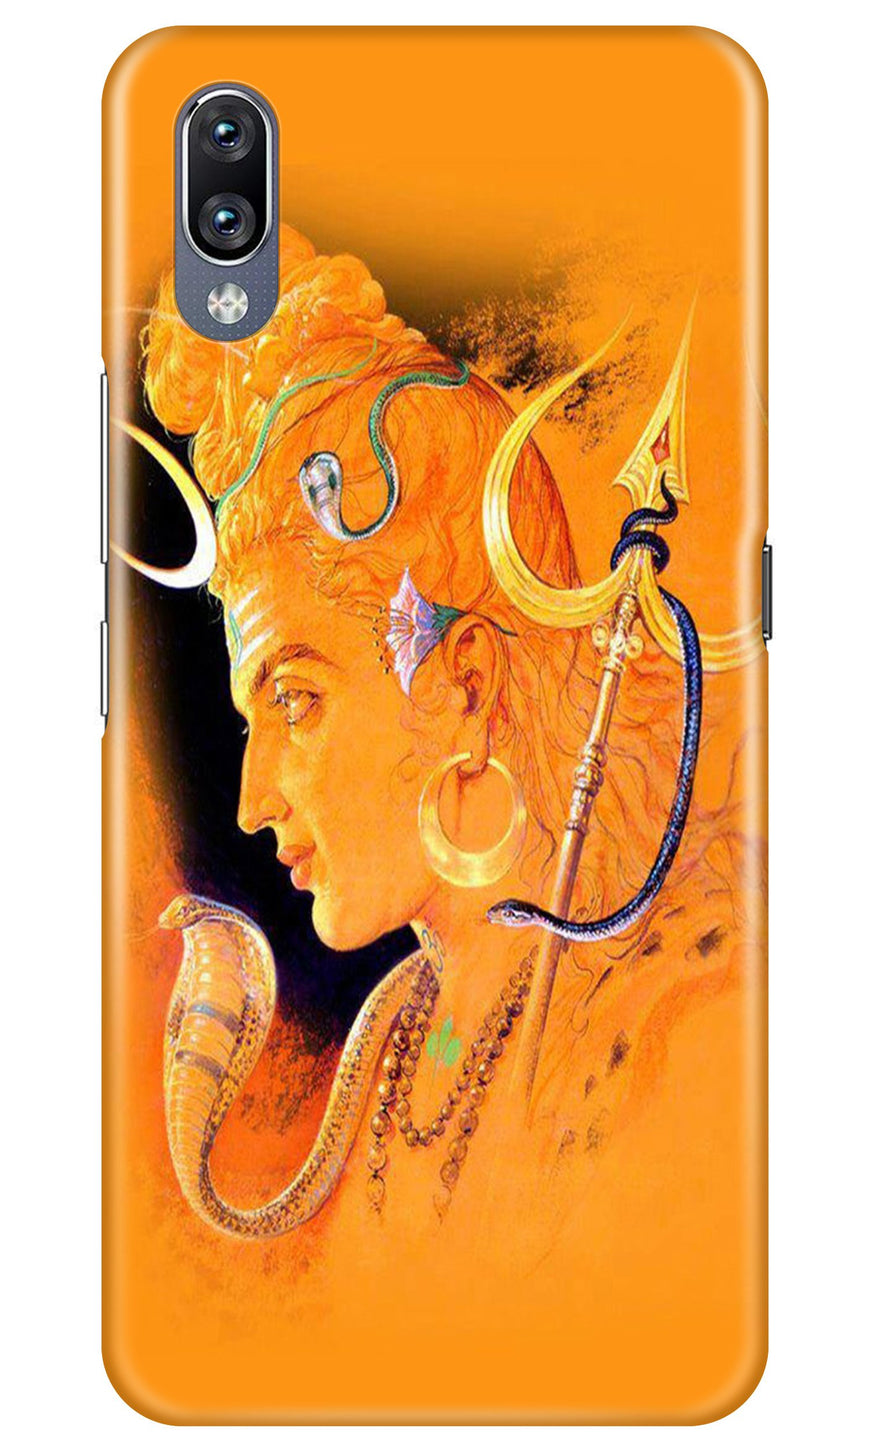 Lord Shiva Case for Vivo Y91i (Design No. 293)